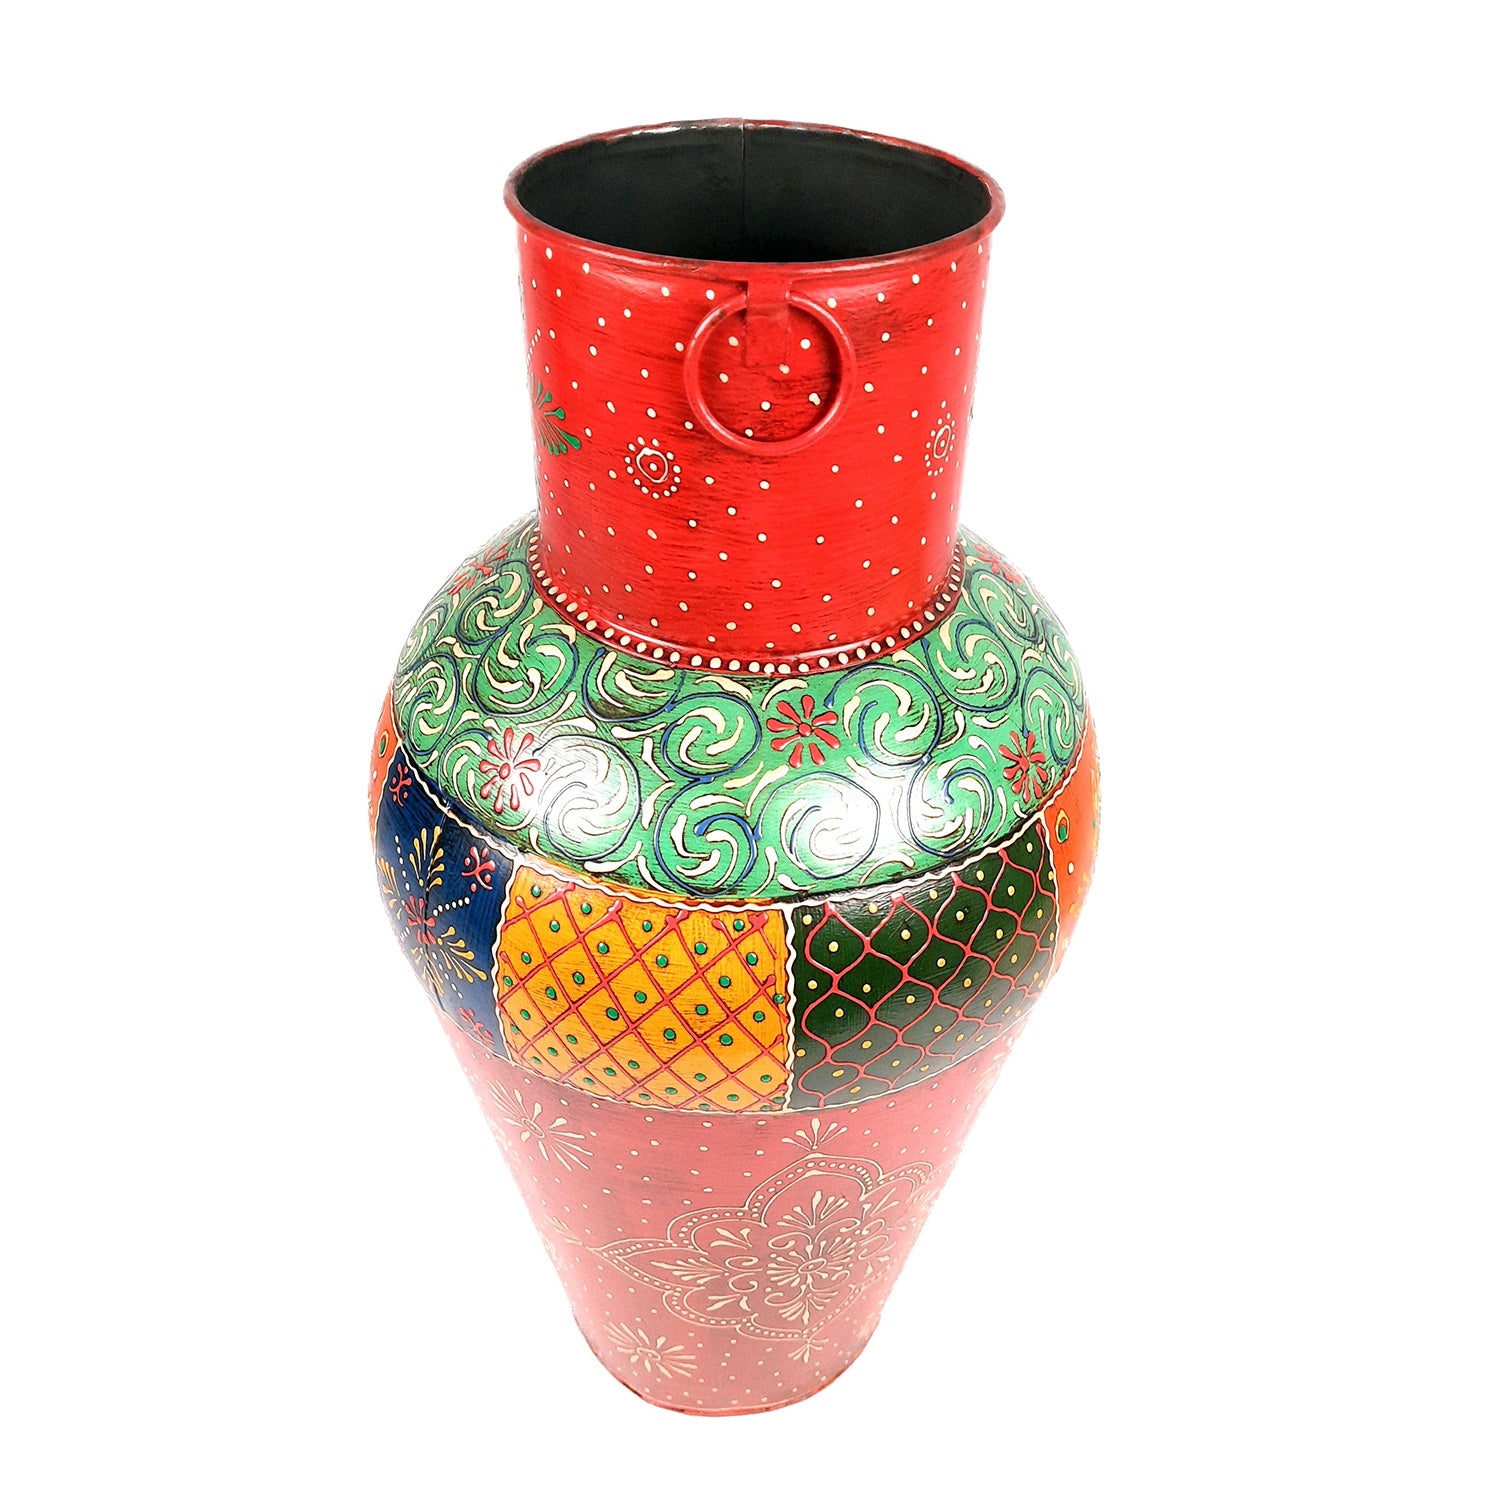 Decorative Flower Pot | Big Flower Vase - for Corners, Living Room & Home Decor -18 Inch - apkamart